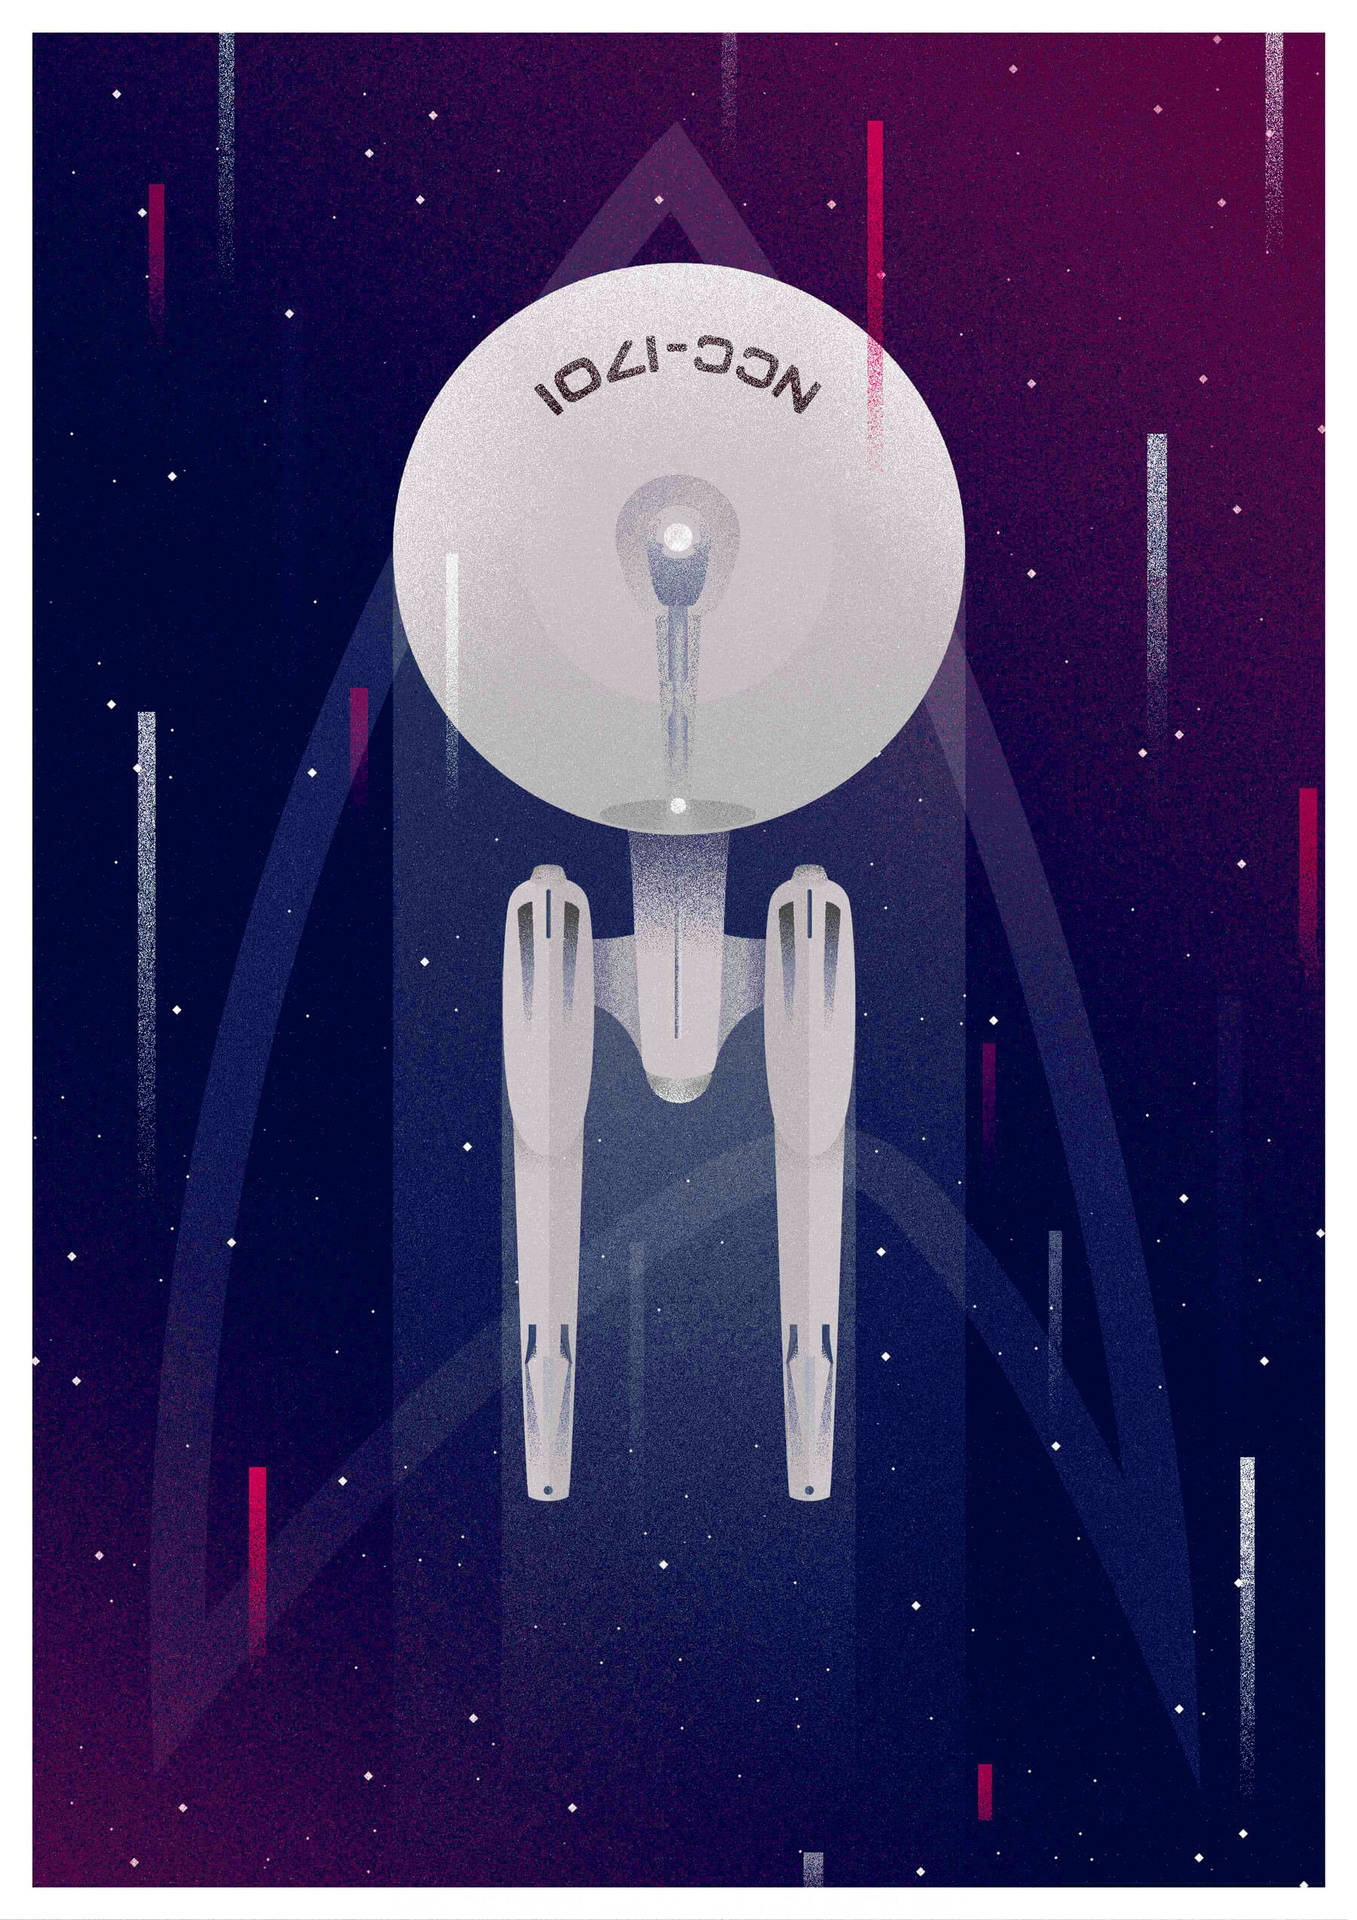 Download Star Trek iPhone Digital Art Wallpaper